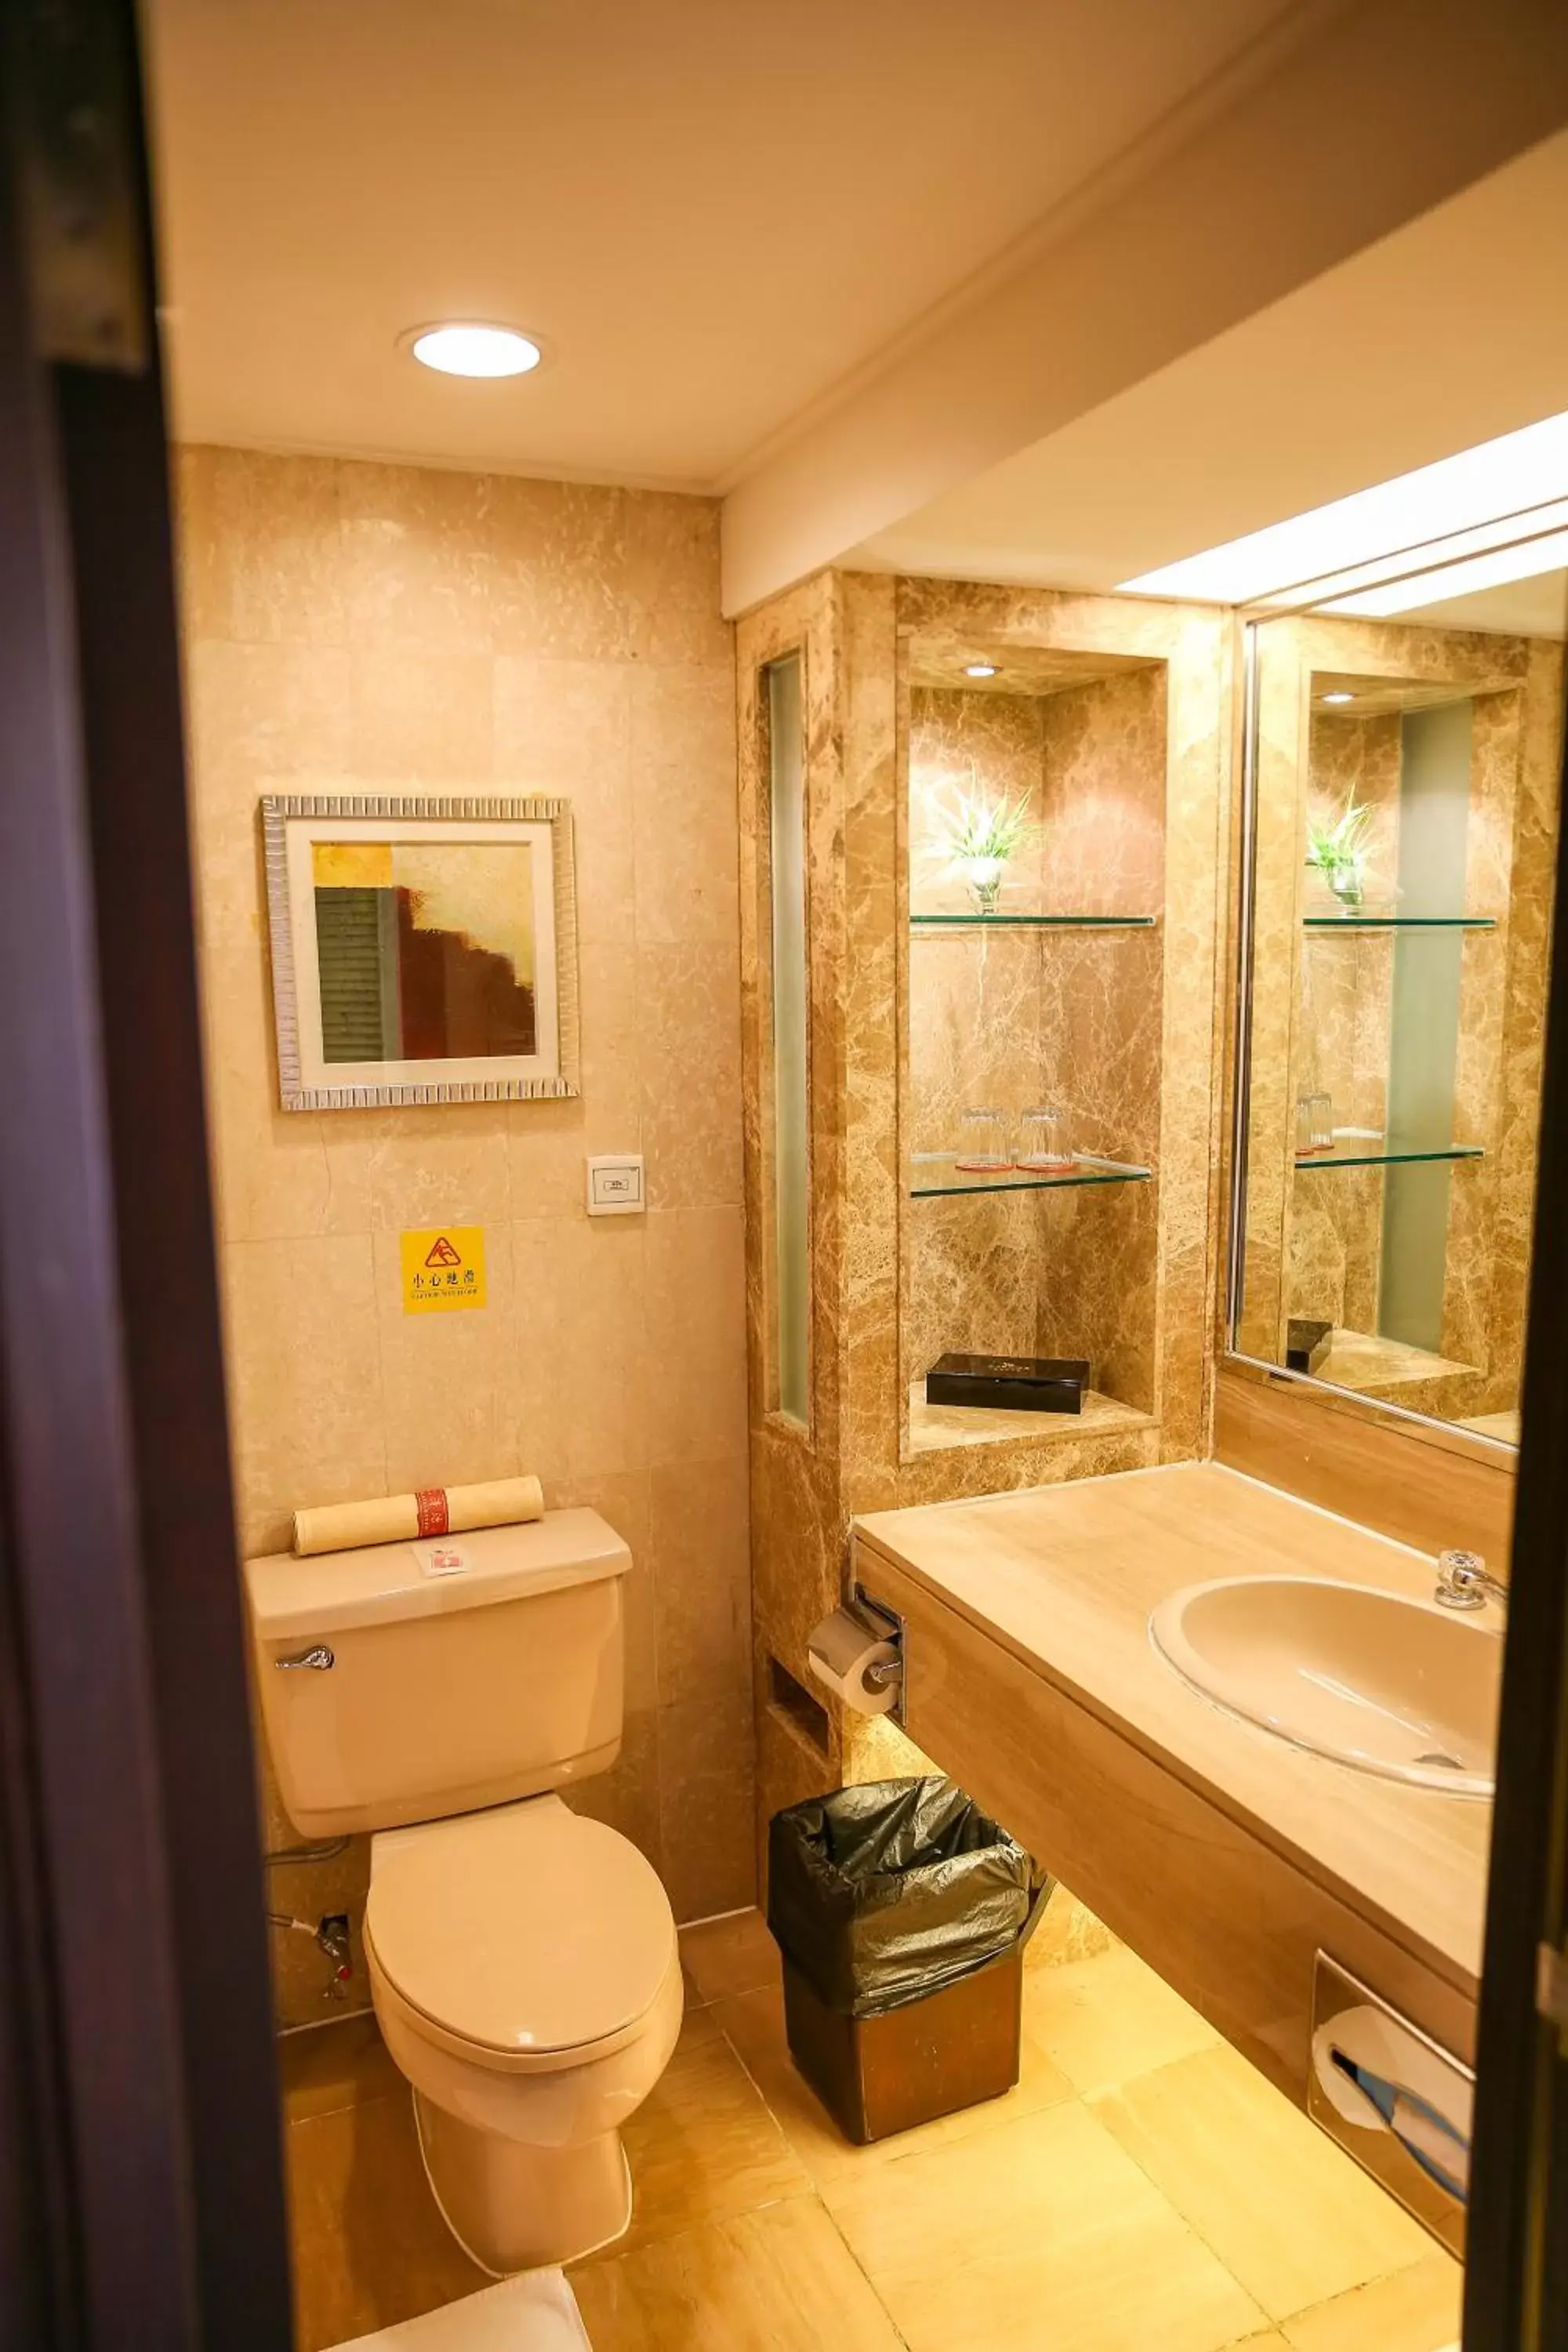 Bathroom in Zhongshan International Hotel